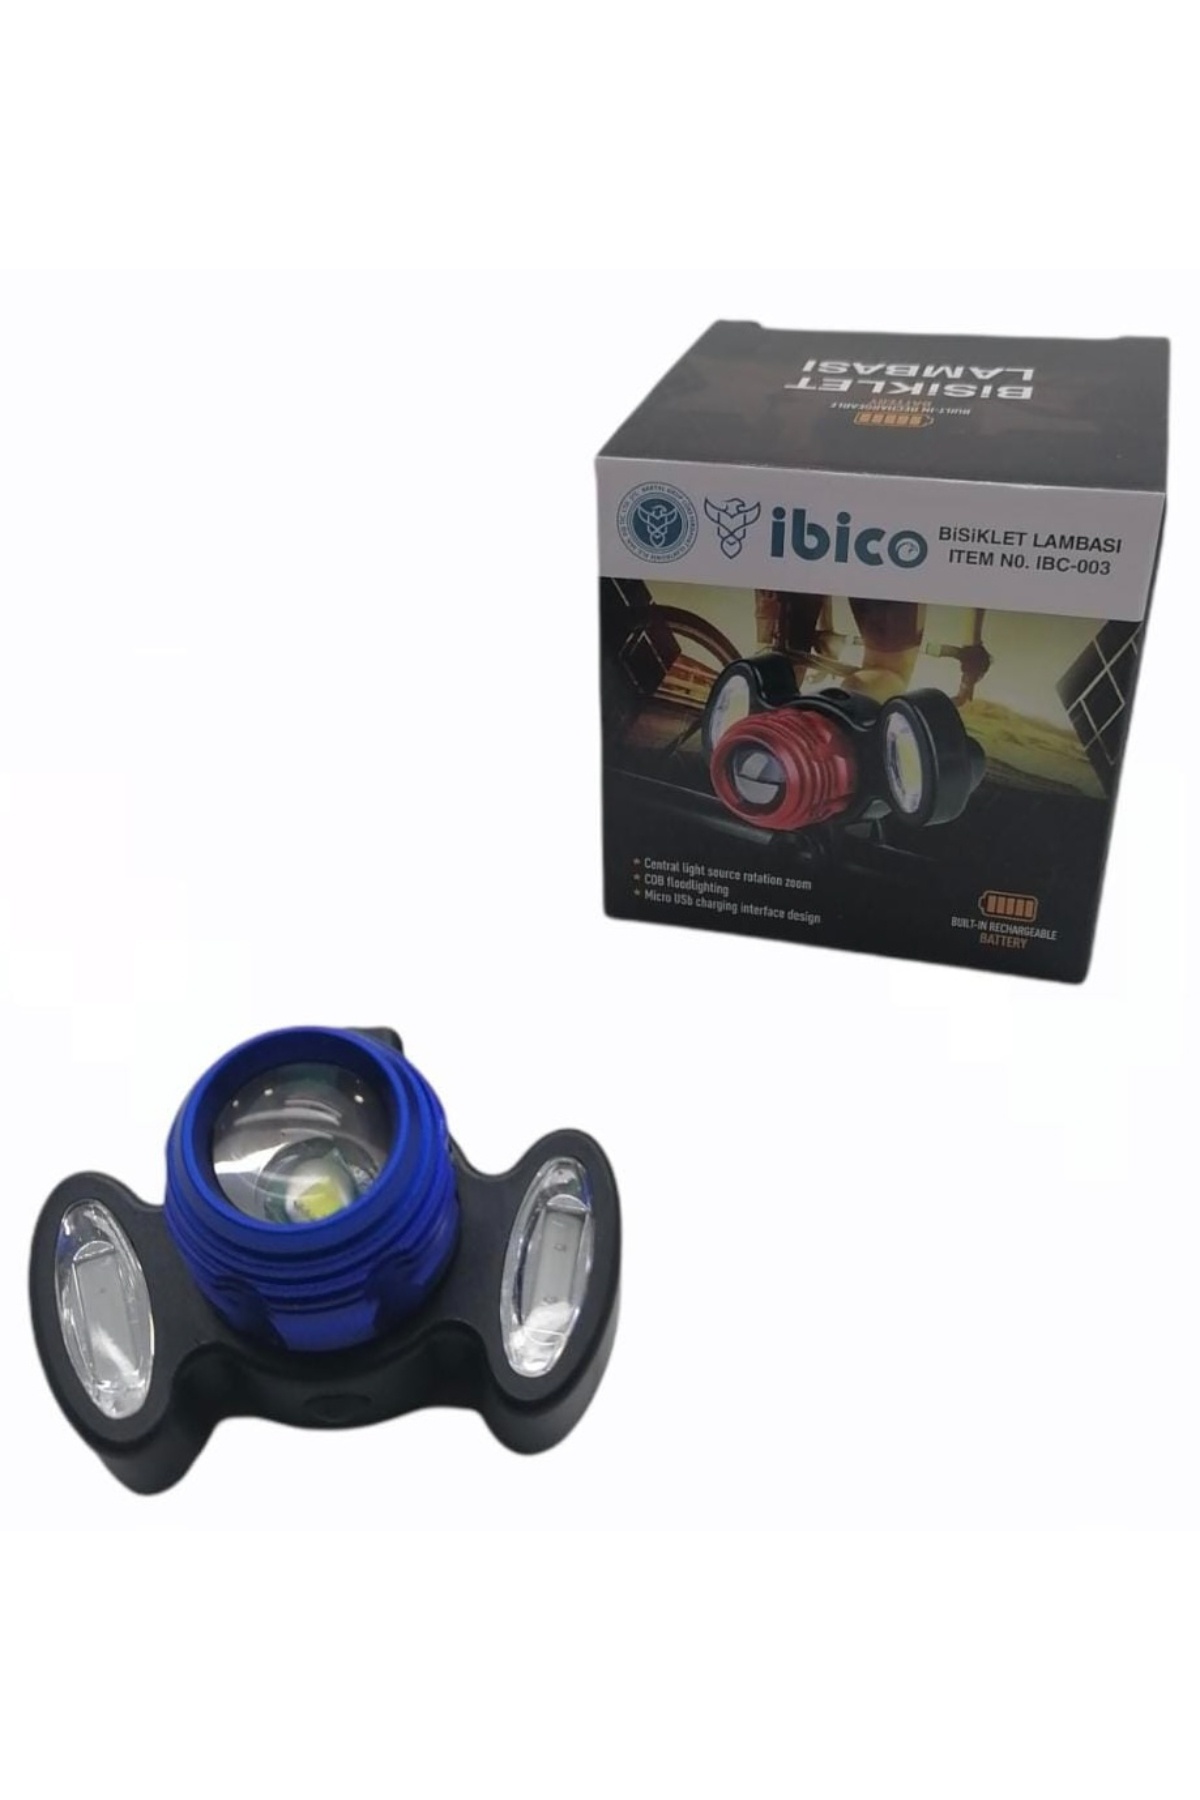 İbico Ibc-003 Çakarlı Bisiklet Lambası*100 - 18-0640 - 2345